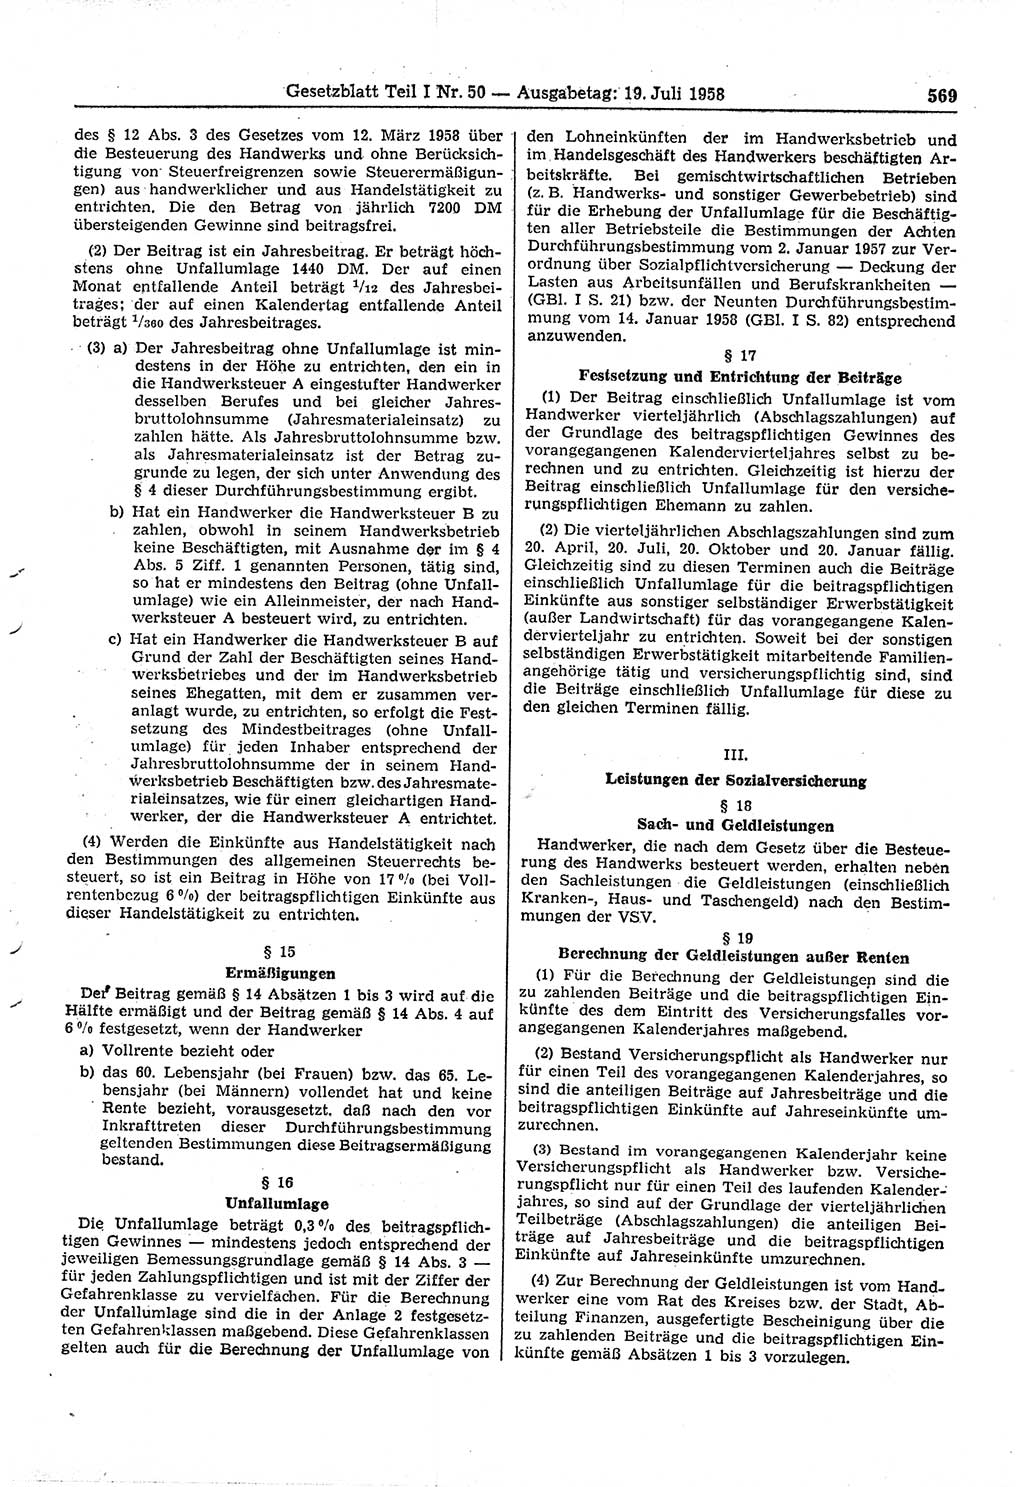 Gesetzblatt (GBl.) der Deutschen Demokratischen Republik (DDR) Teil Ⅰ 1958, Seite 569 (GBl. DDR Ⅰ 1958, S. 569)